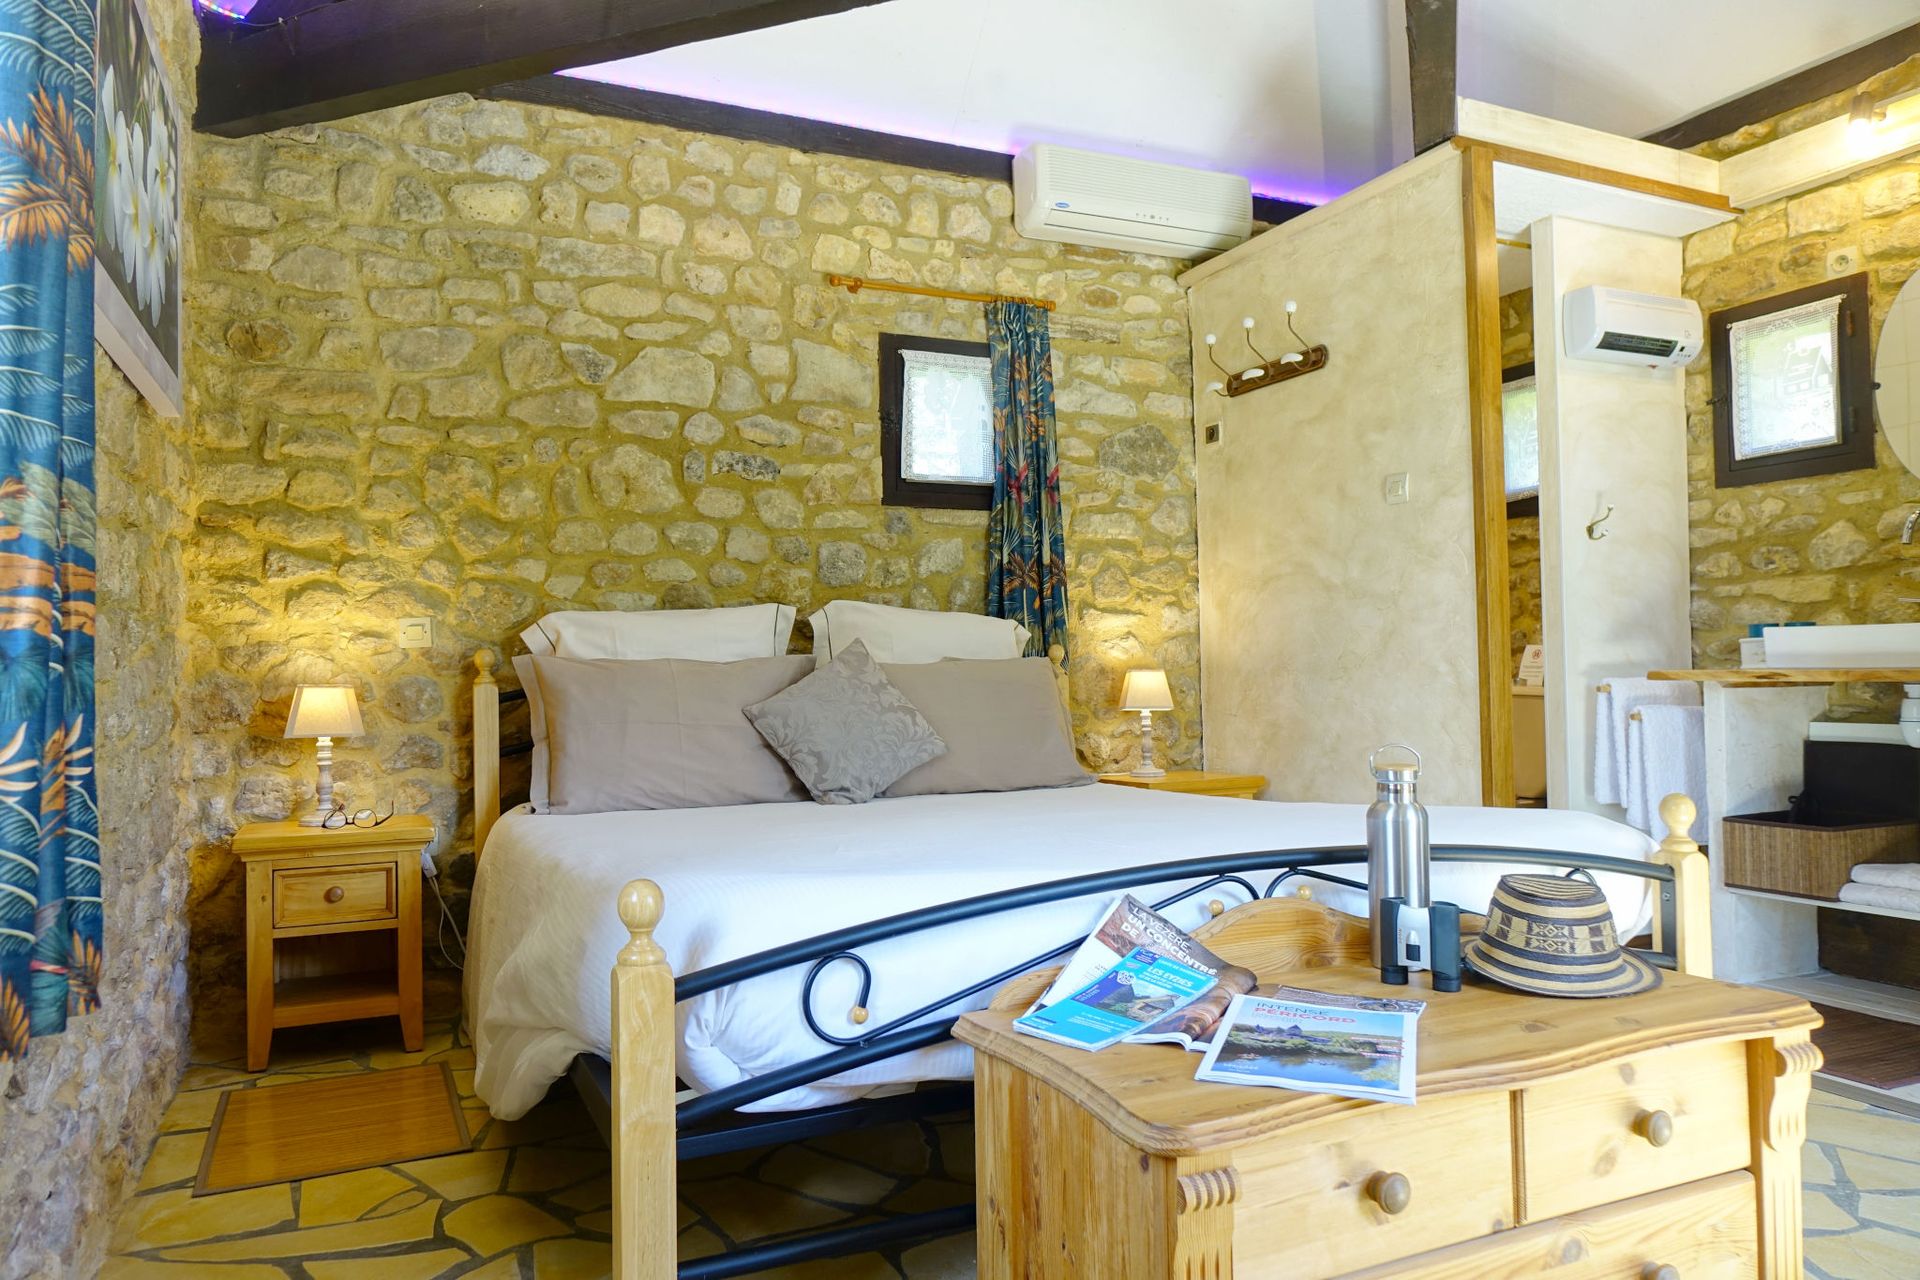 Vista interior de la habitacion La Borie, cama con edredón blanco, mesitas de noche y lámparas, mueble bajo y baño